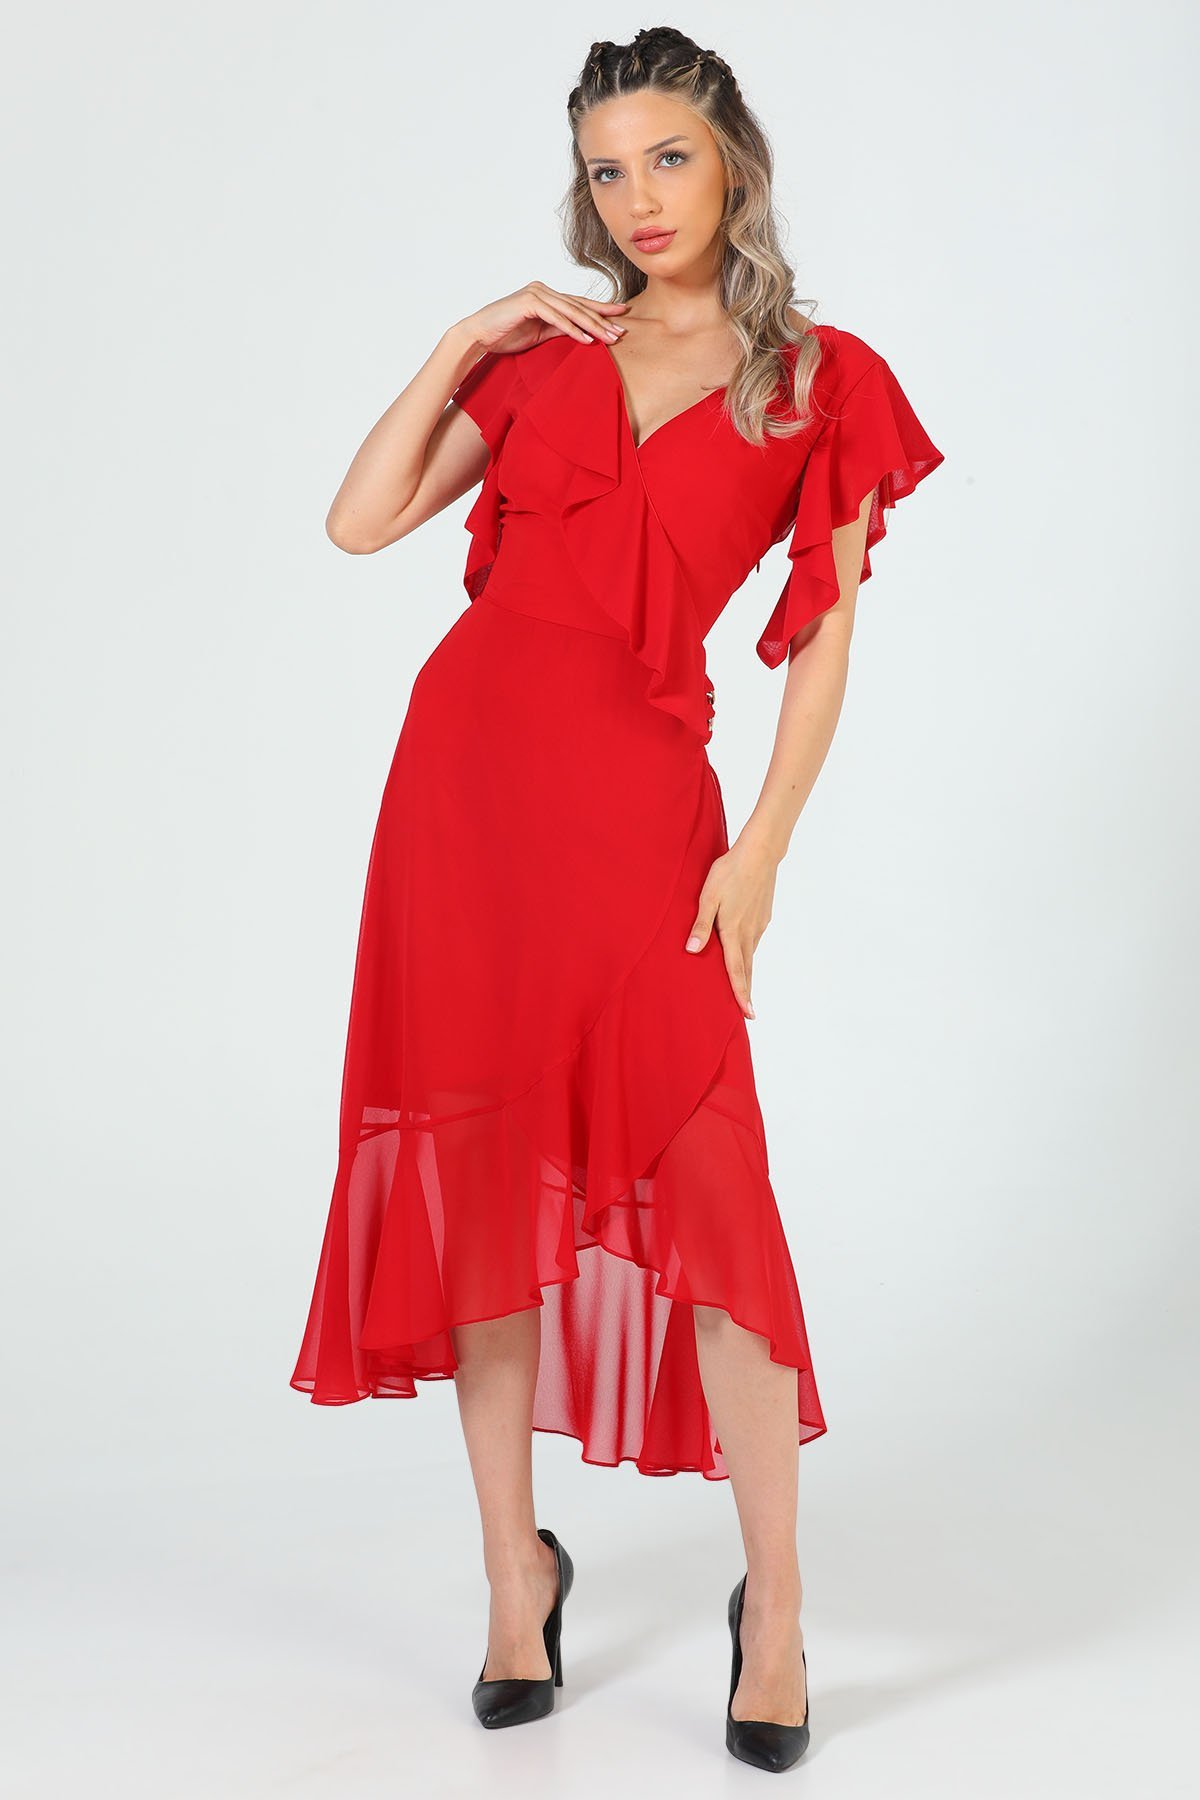 Kadın Zincir Detaylı Şifon Elbise Kırmızı 503023 - tozlu.com